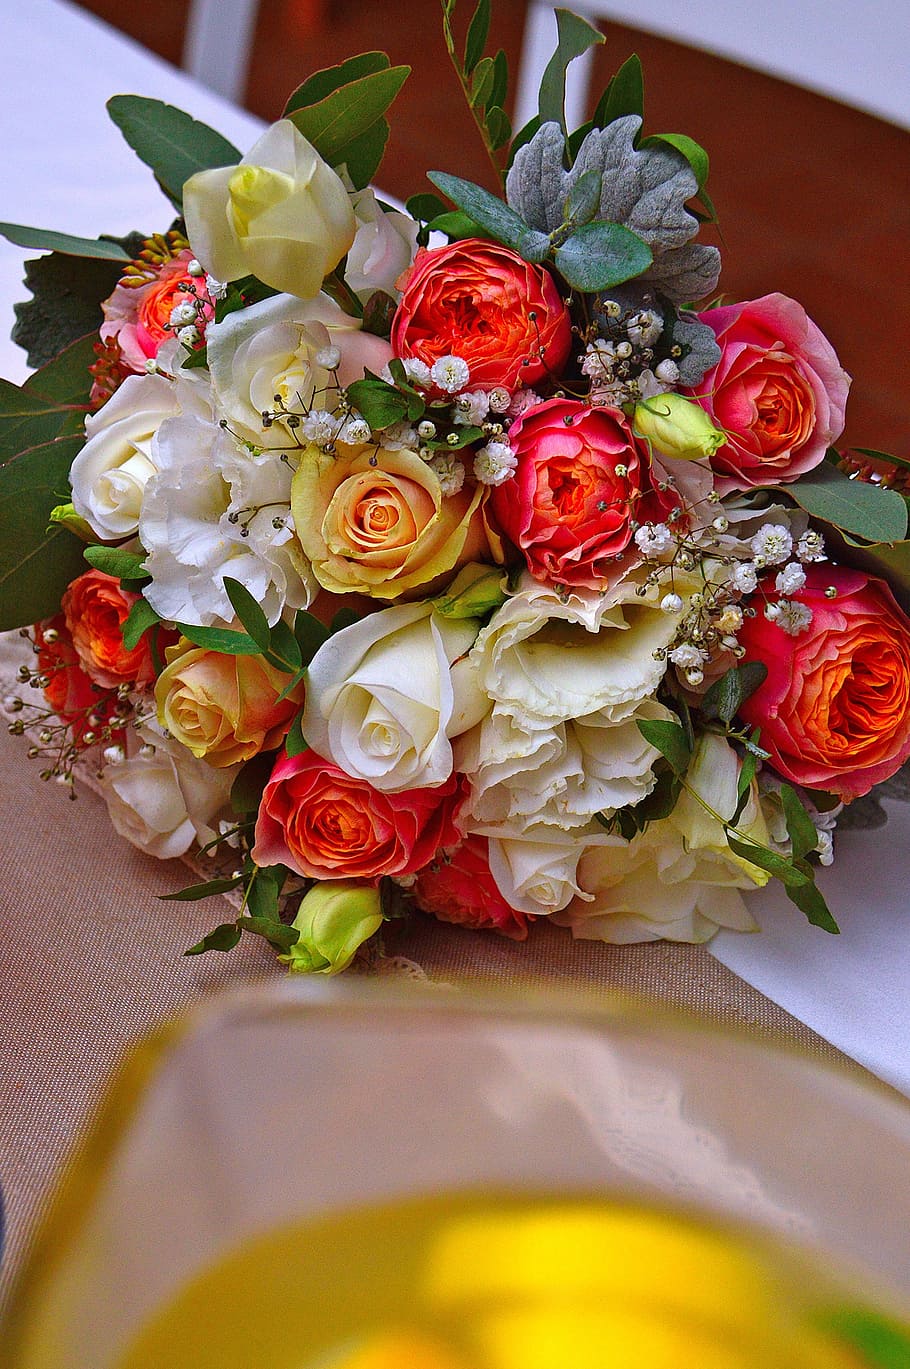 bouquet, wedding, ornament, centerpieces, bride, rose, flower, plant, romanticism, vintage